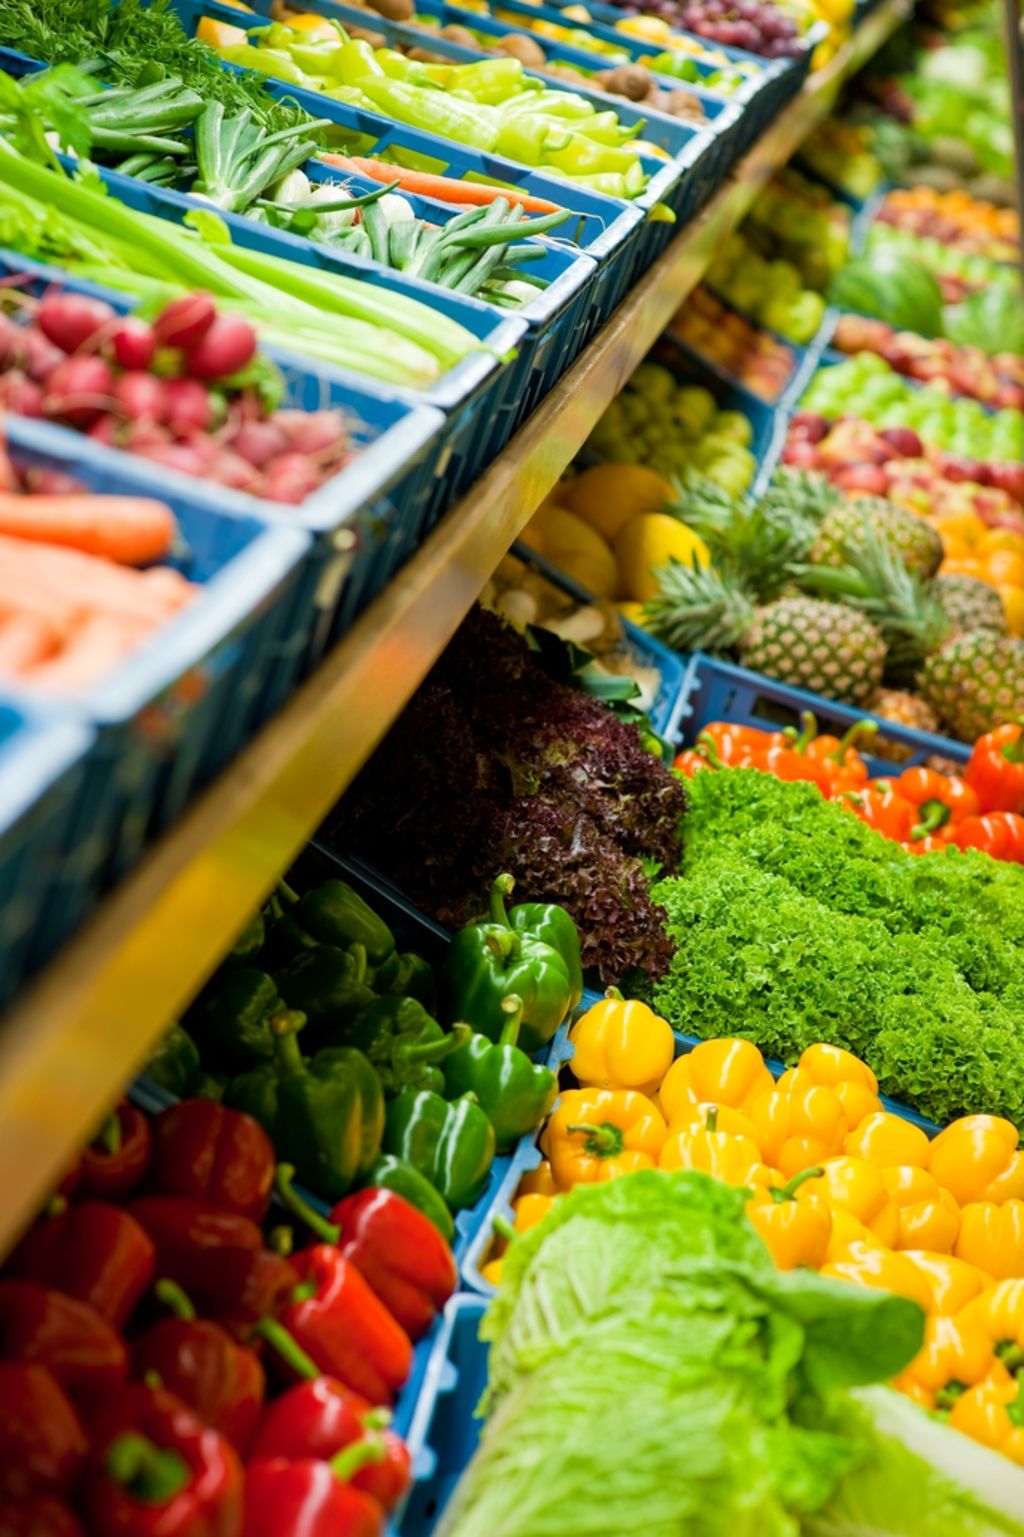 La ingesta de frutas y verduras de forma suficiente es una opción que puede salvar 1.7 millones de vidas al año. (ARCHIVO)